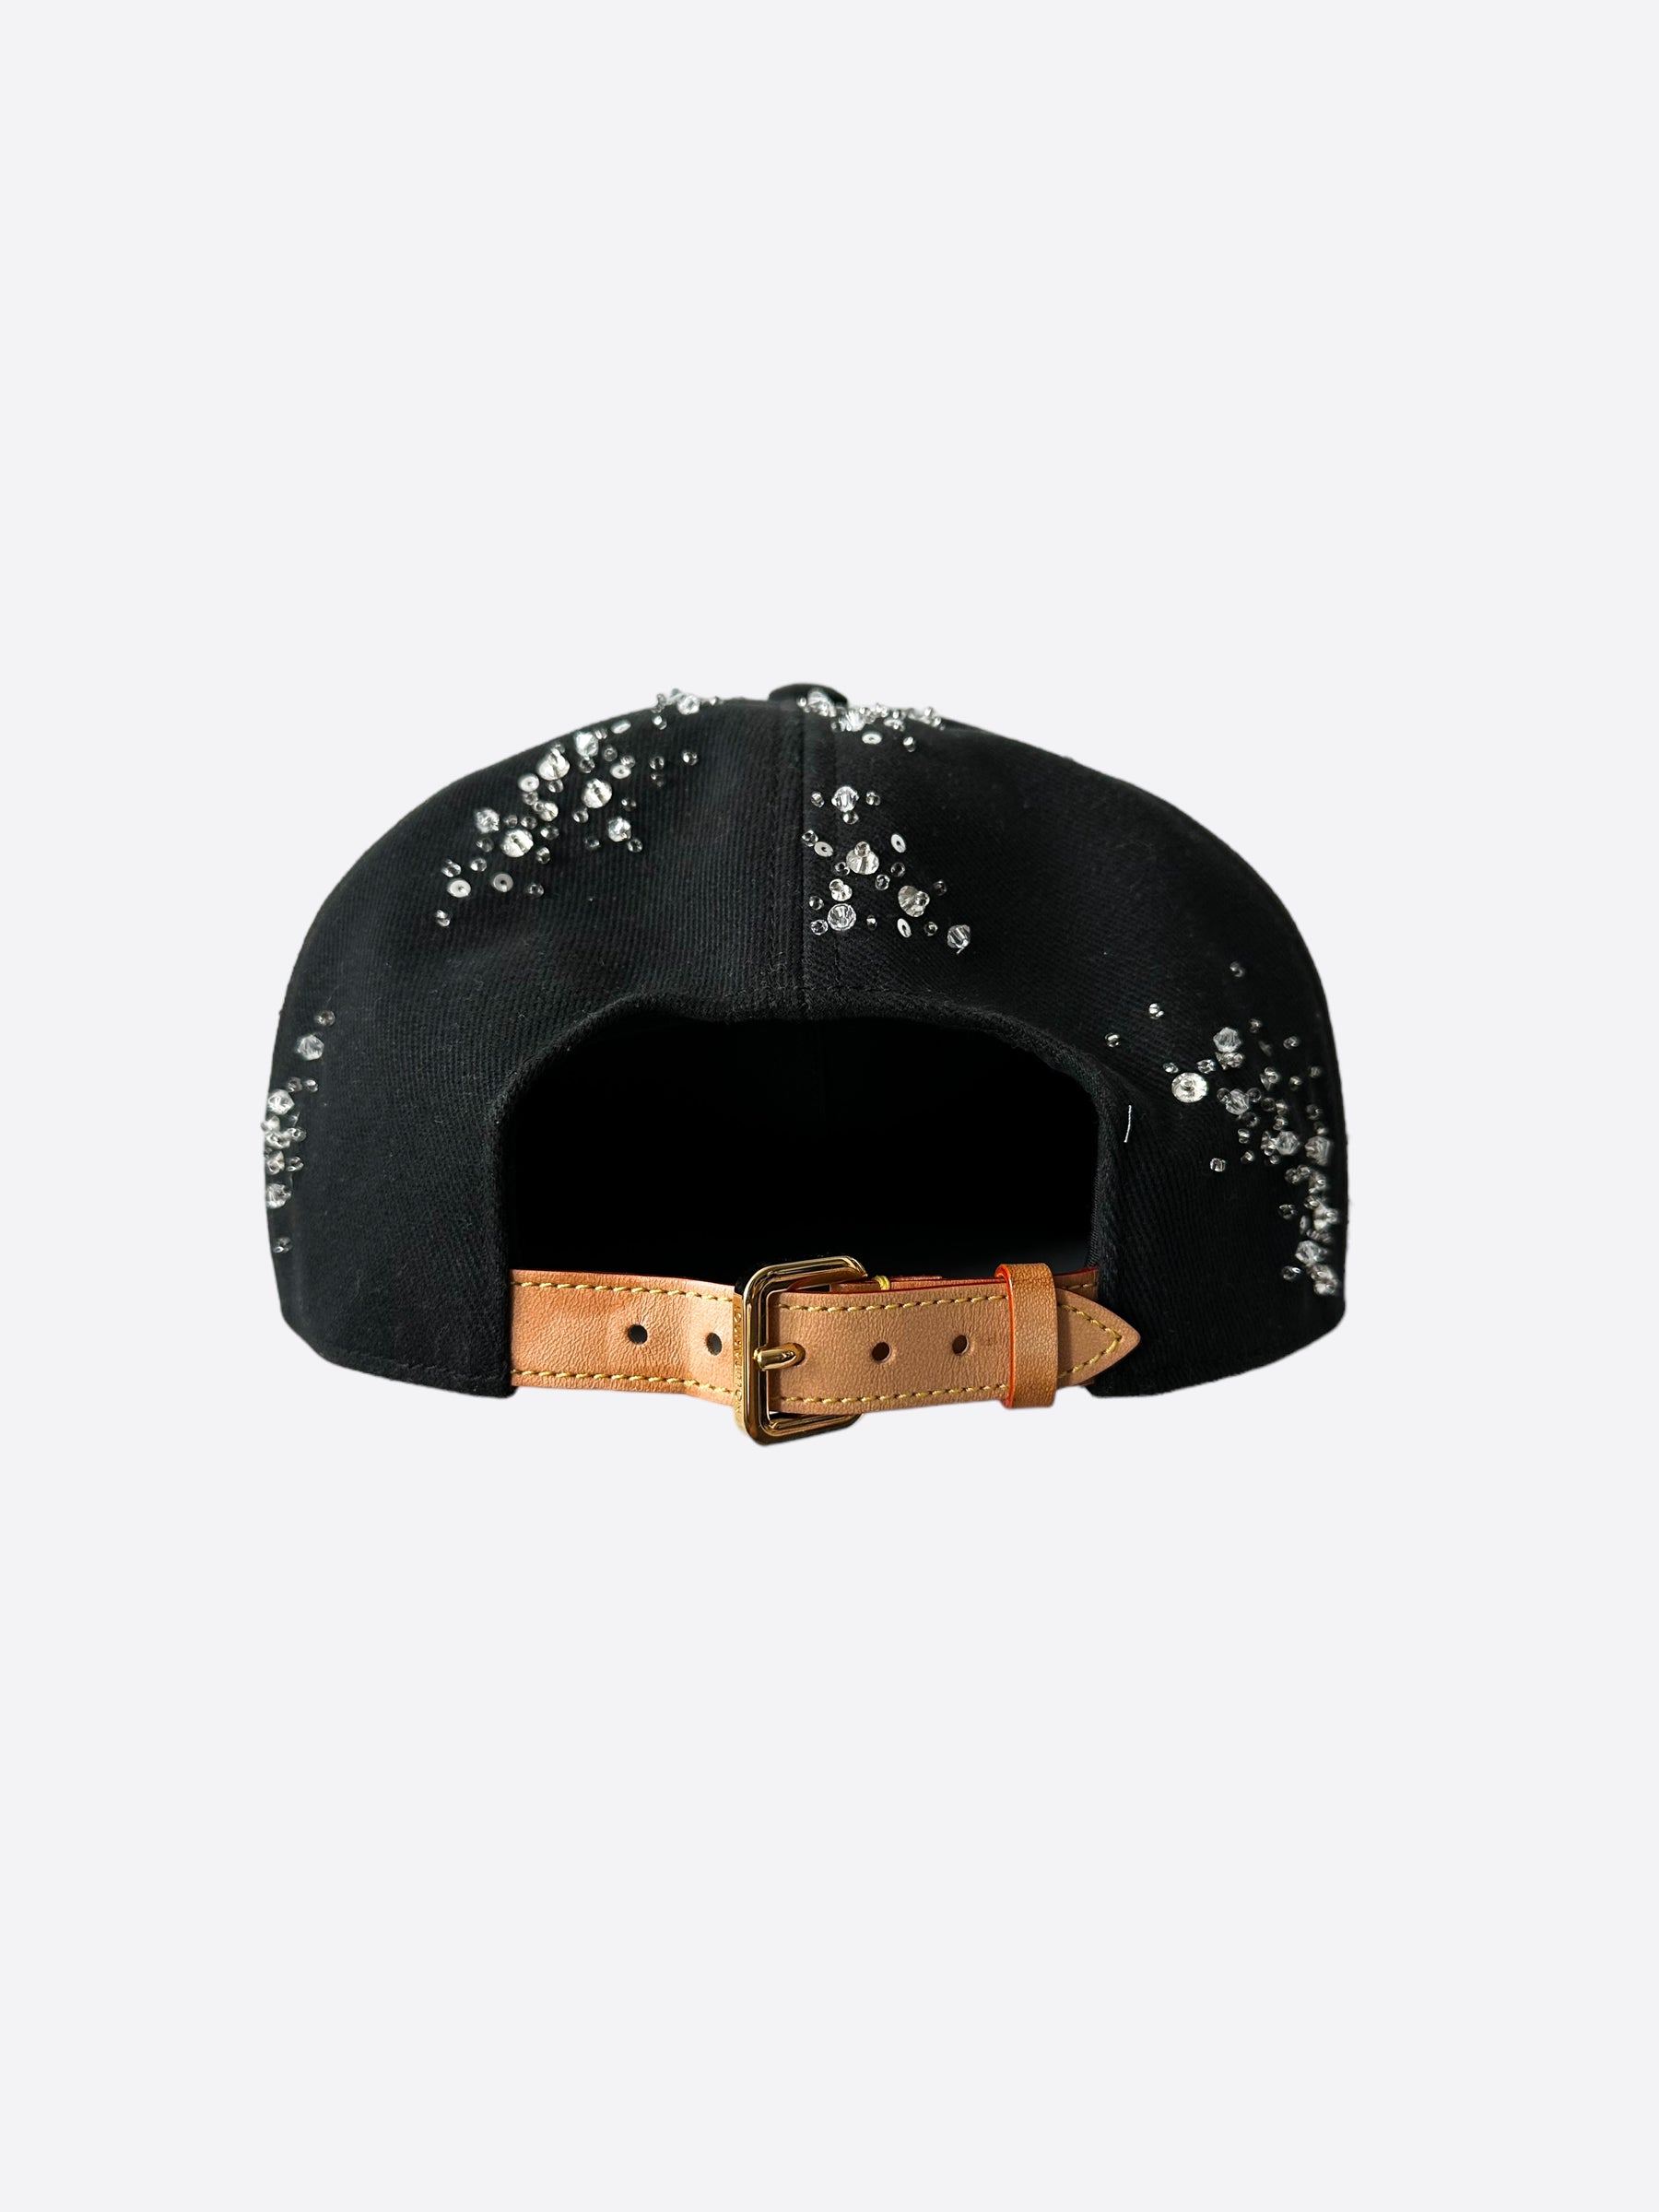 Dior Oblique Beige & Navy Blue Bucket Hat – Savonches